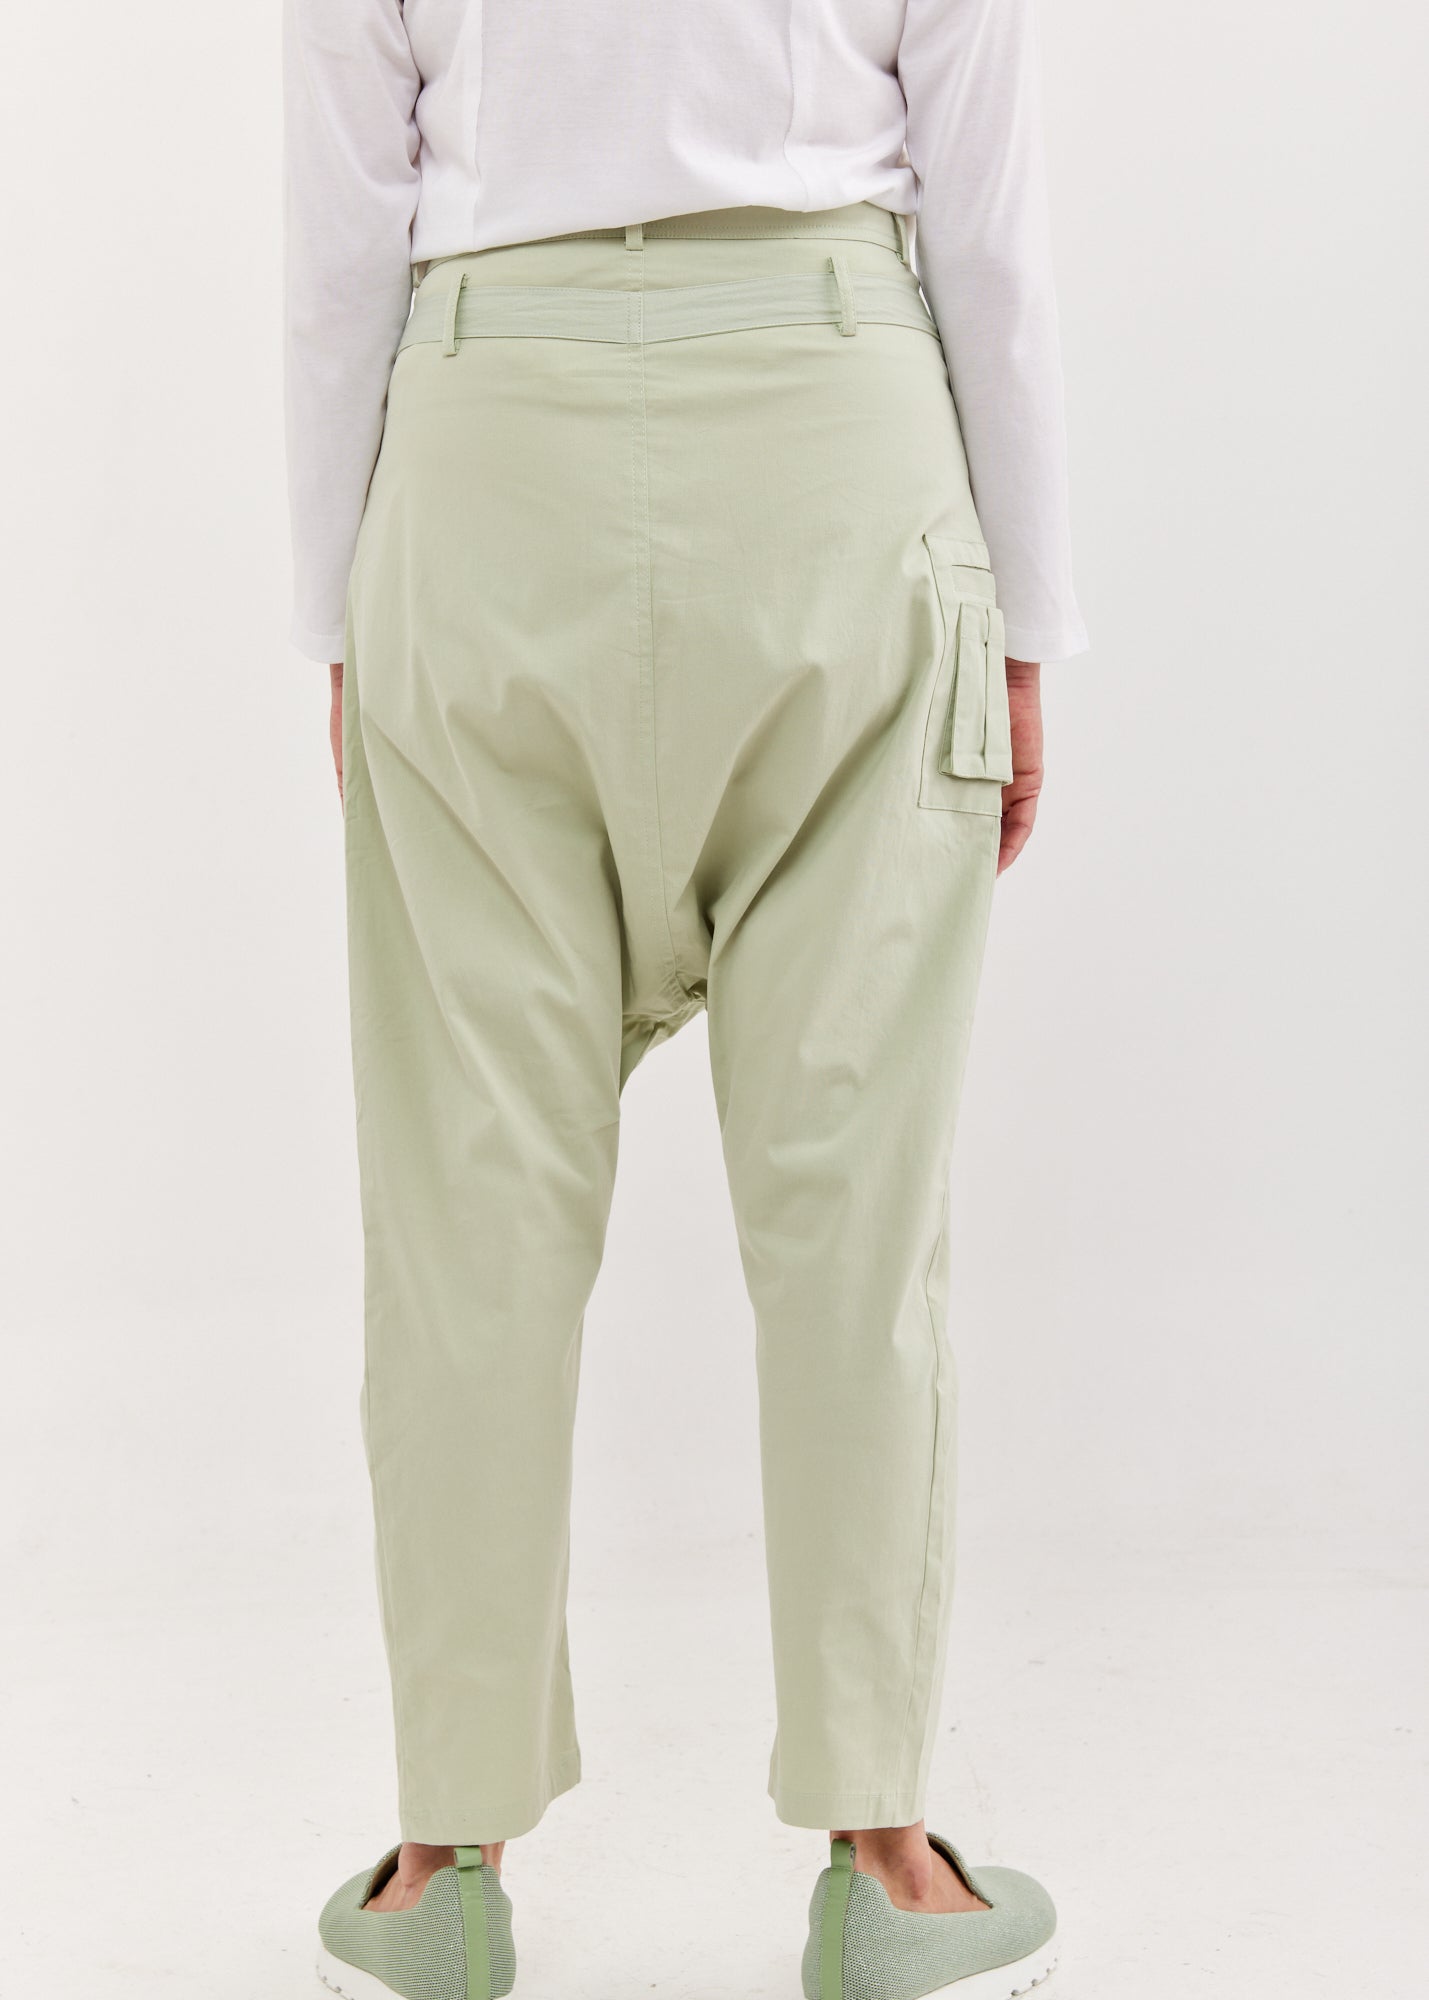 מכנסיים שקי עם סרט ירוק בהיר